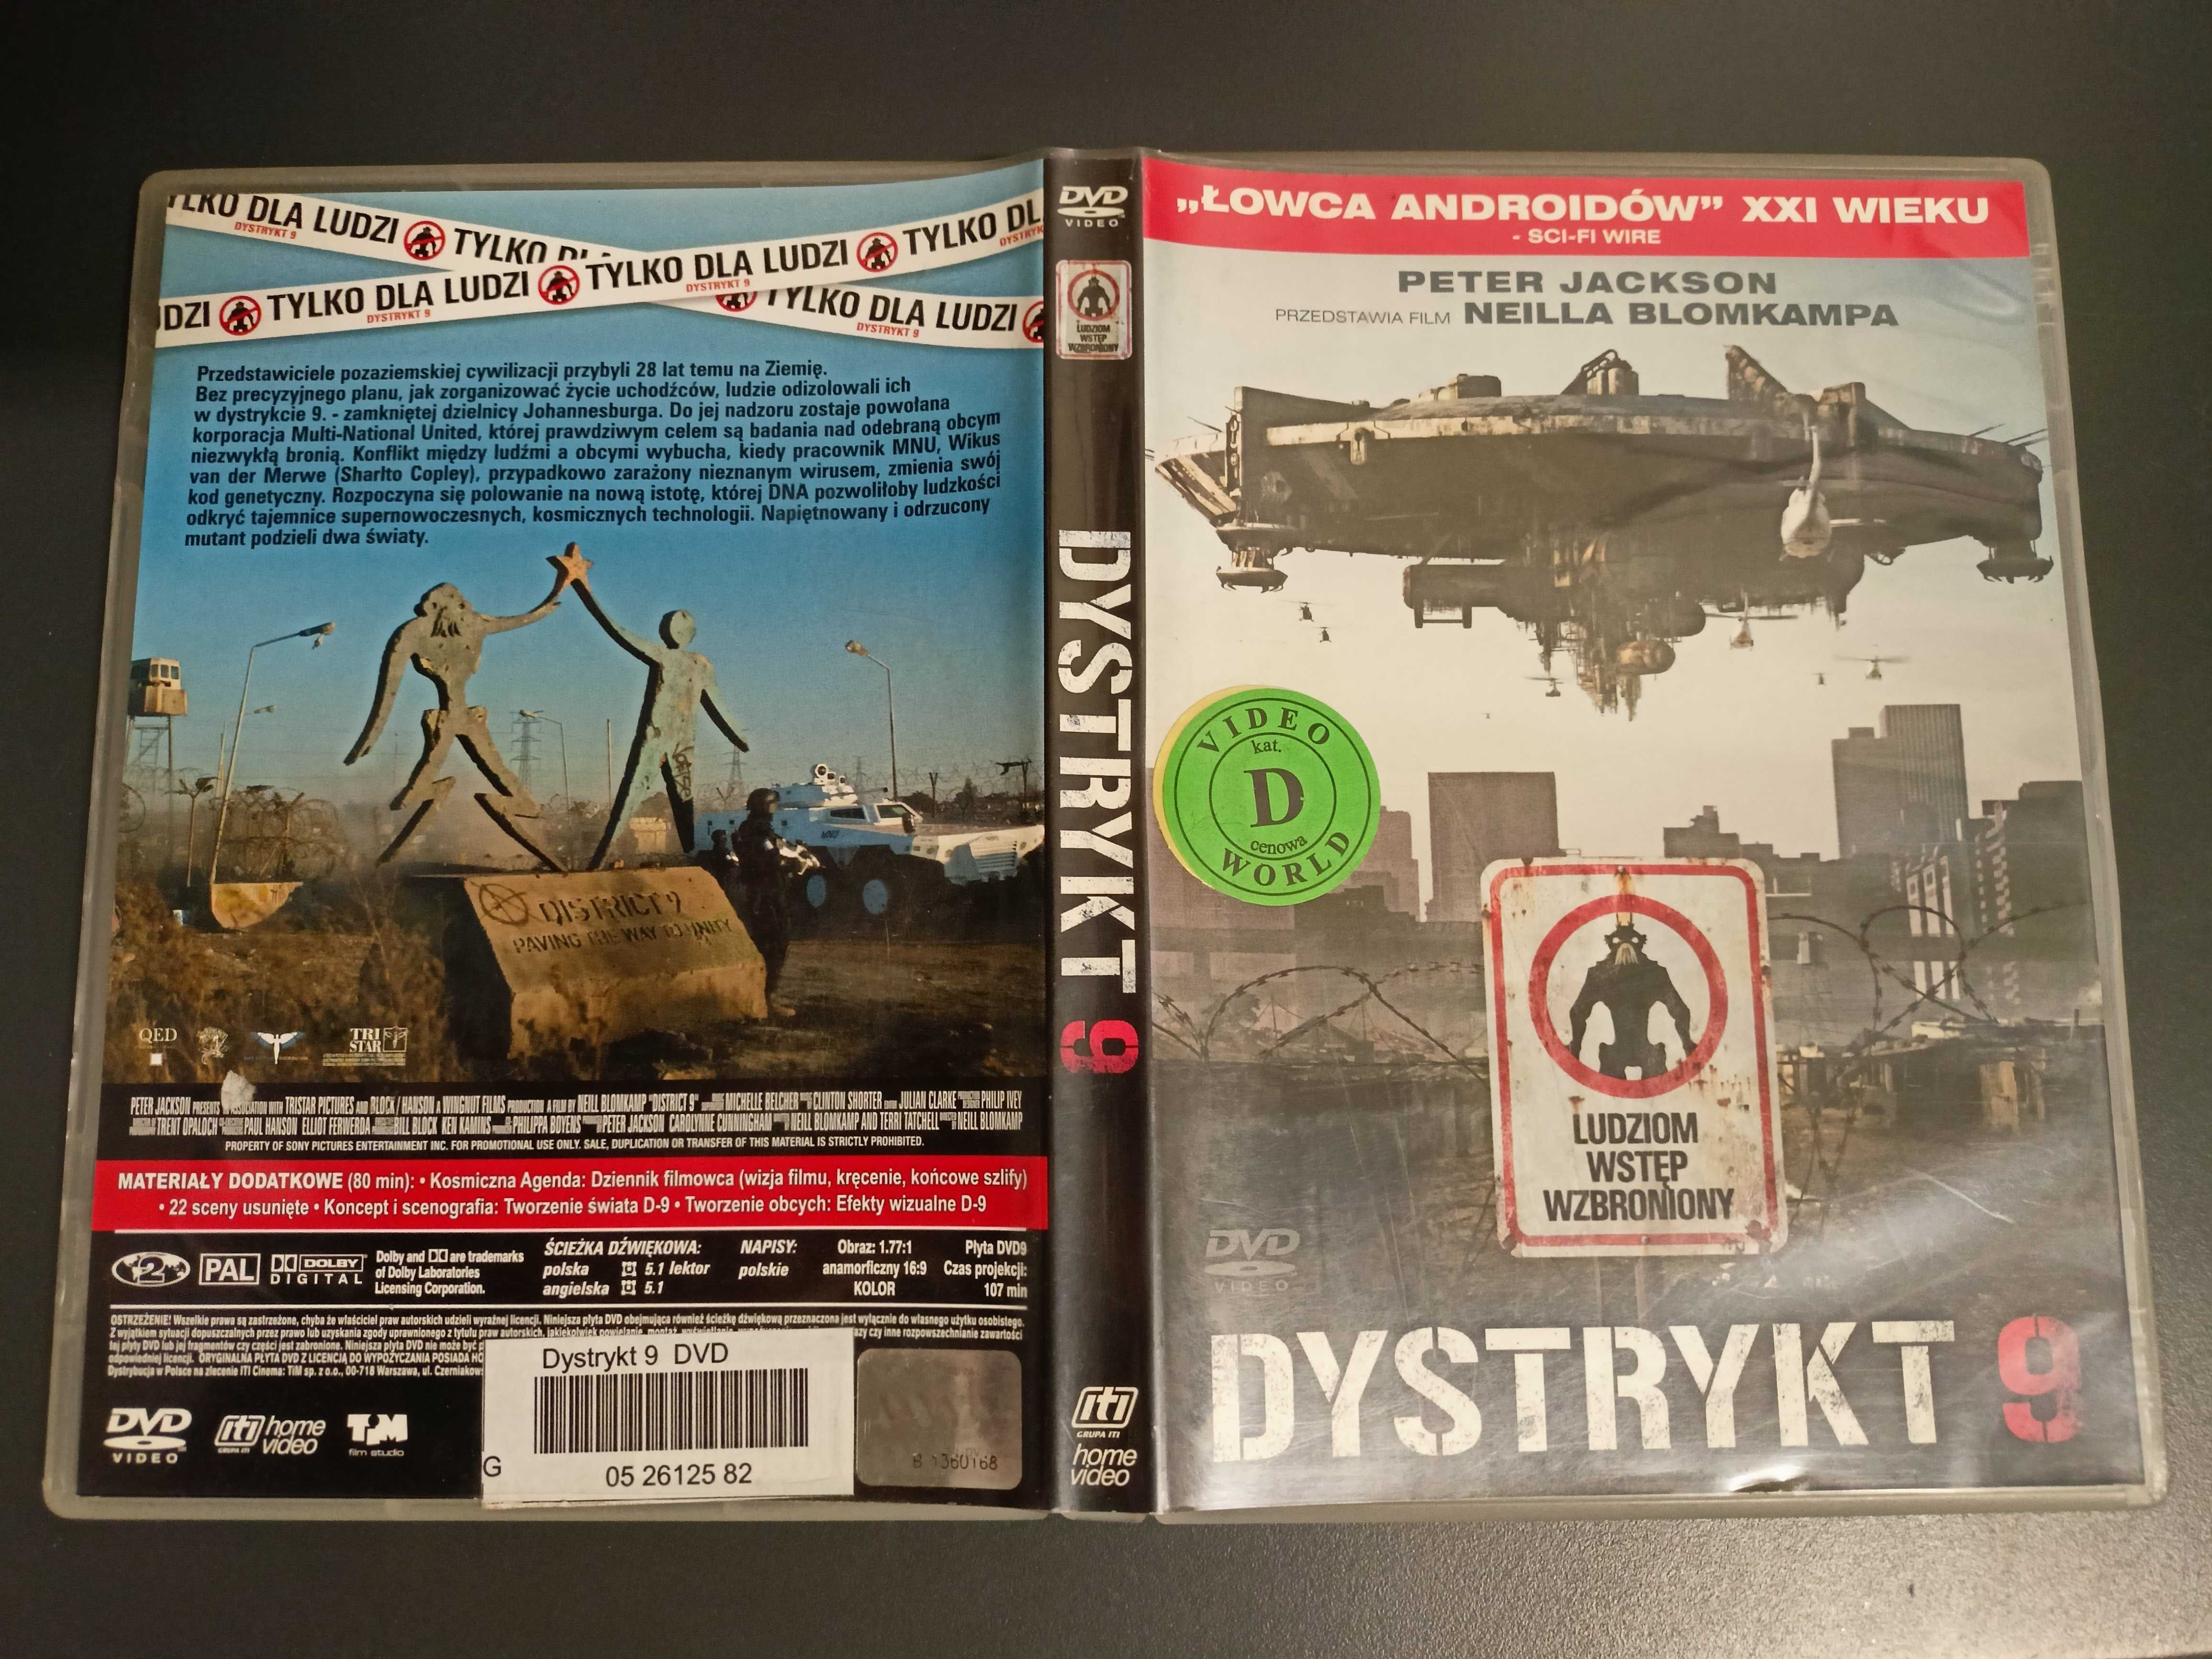 Dystrykt 9 DVD Fantasy